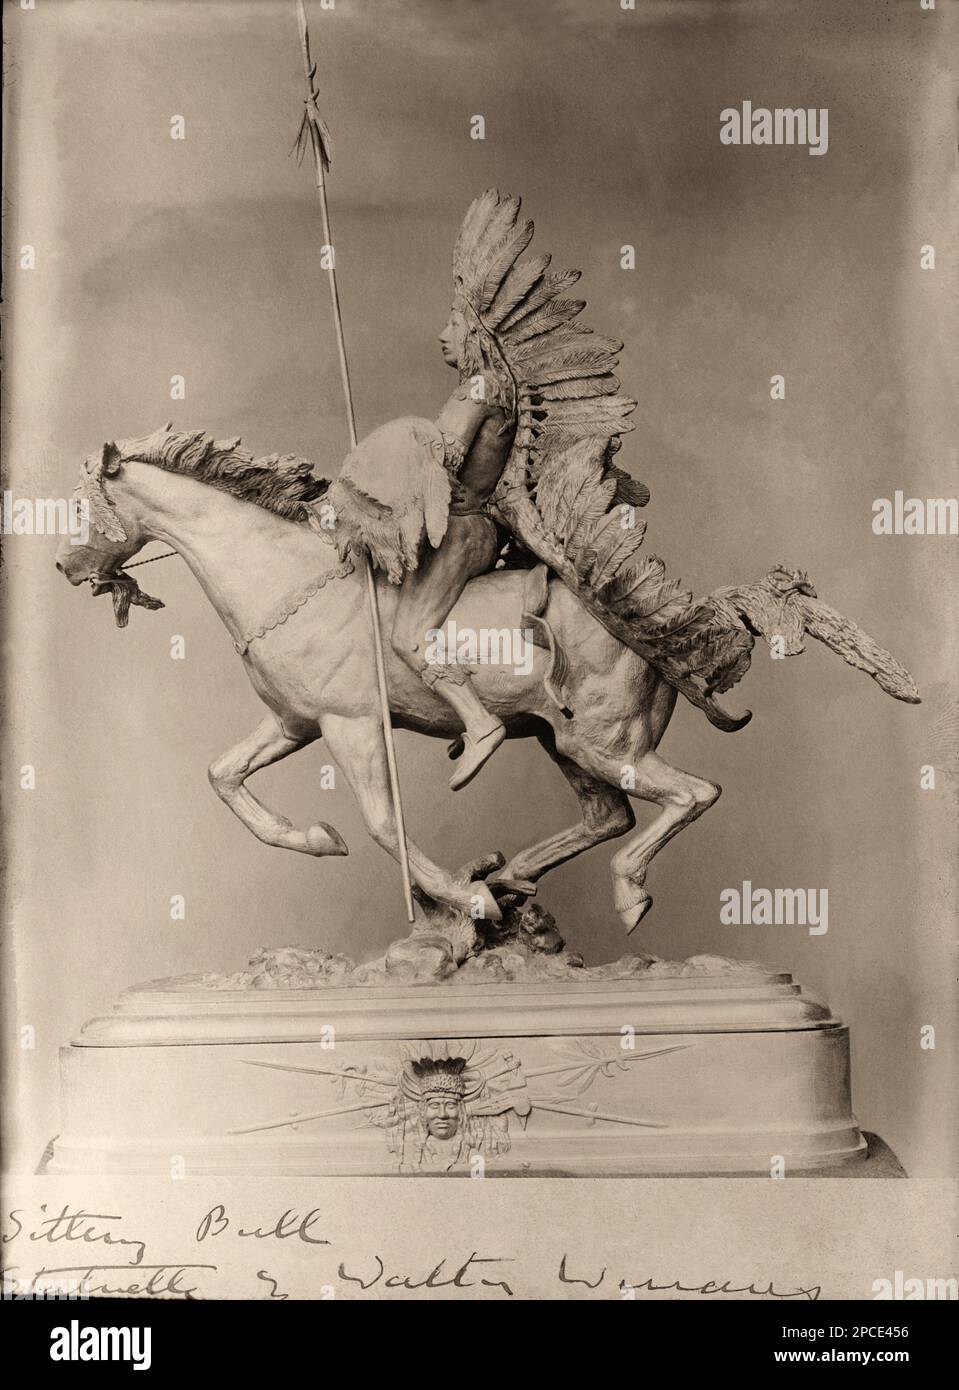 1880 ca , USA :  The indian Hunkpapa Lakota Sioux chief  SITTING BULL  ( 1831 ca - 1890 )  statuette by american sculptor WALTER WINANS  -  Buffalo Bill 's Wild West Show - Tatanka Lyotake - Epopea del Selvaggio WEST - NATIVE AMERICANS - INDIANO D' AMERICA - Indiani - TORO SEDUTO - piuma - feathers - piume - PORTRAIT - RITRATTO - HISTORY - FOTO STORICHE - SCULTORE - SCULTURA - SCULPTURE - HORSE - CAVALLO - STATUA - STATUE - ARTE - ARTS ----  Archivio GBB Stock Photo